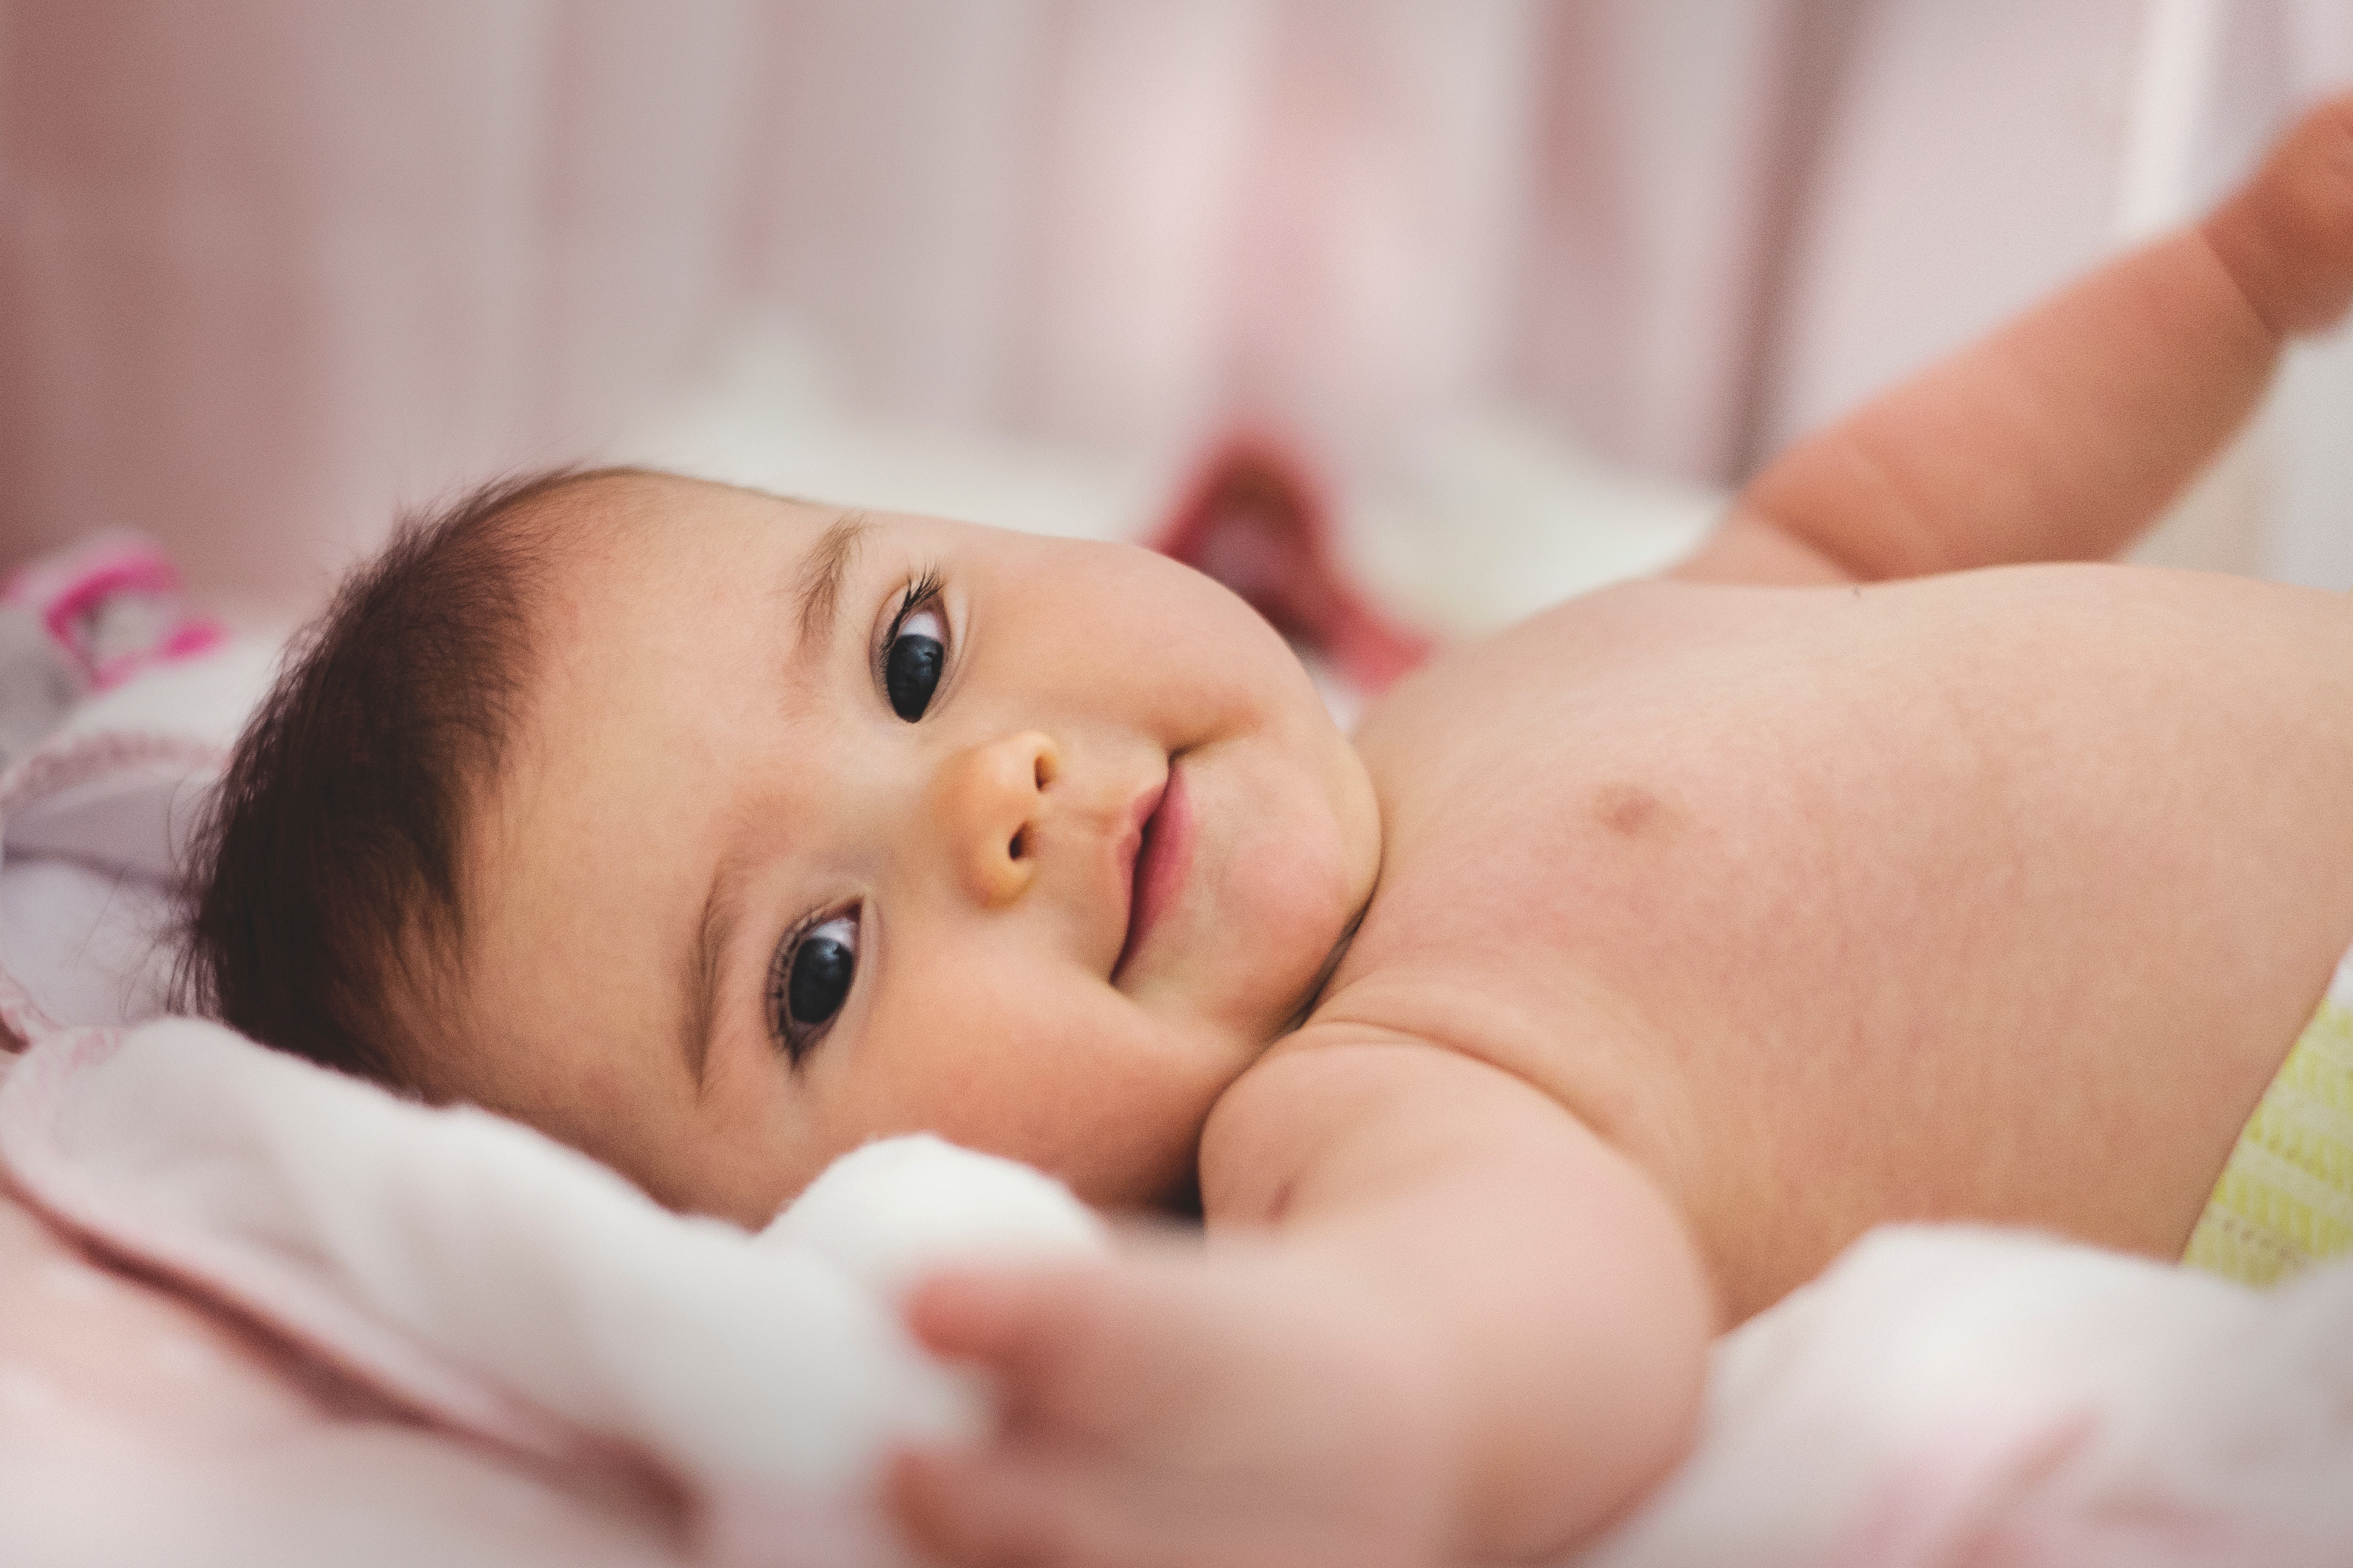 Phénoxyéthanol dans les cosmétiques bébés: les recommandations de l’ANSM